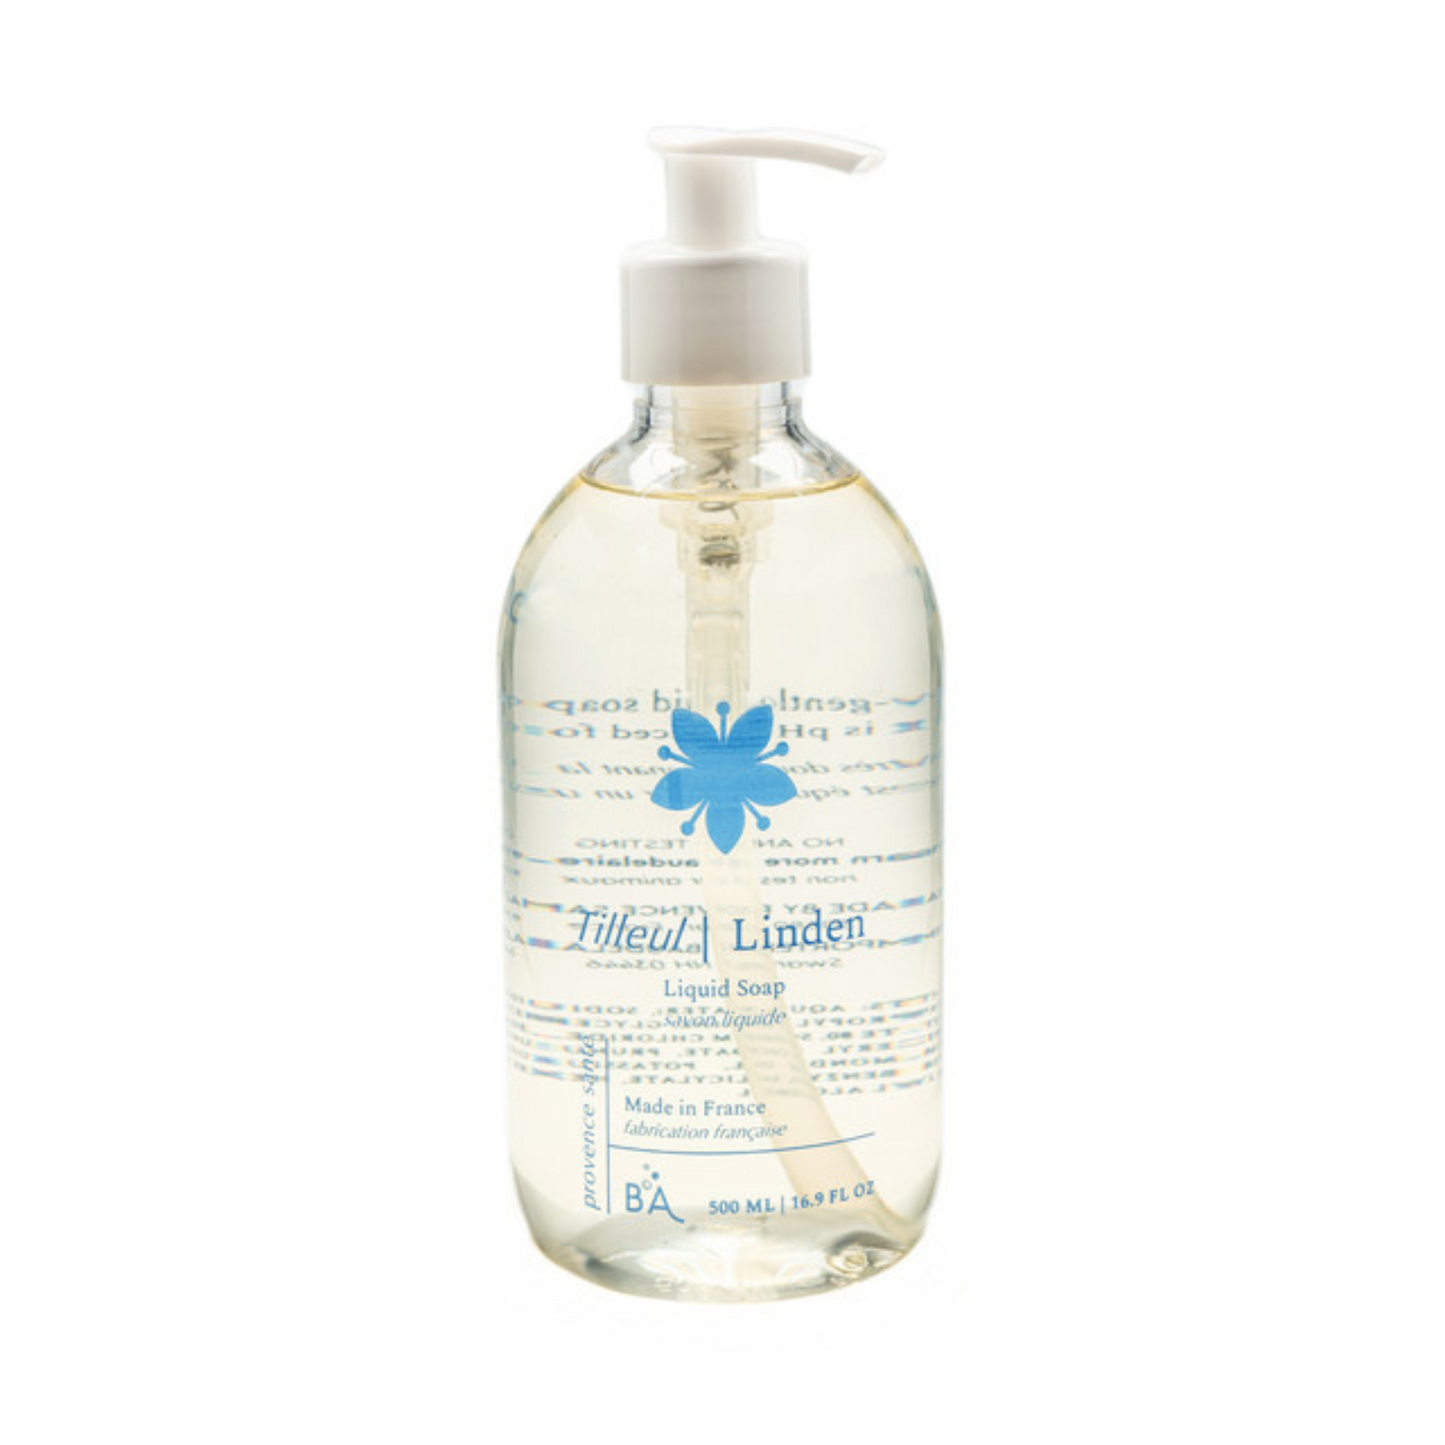 Primary image of Linden Liquid Soap